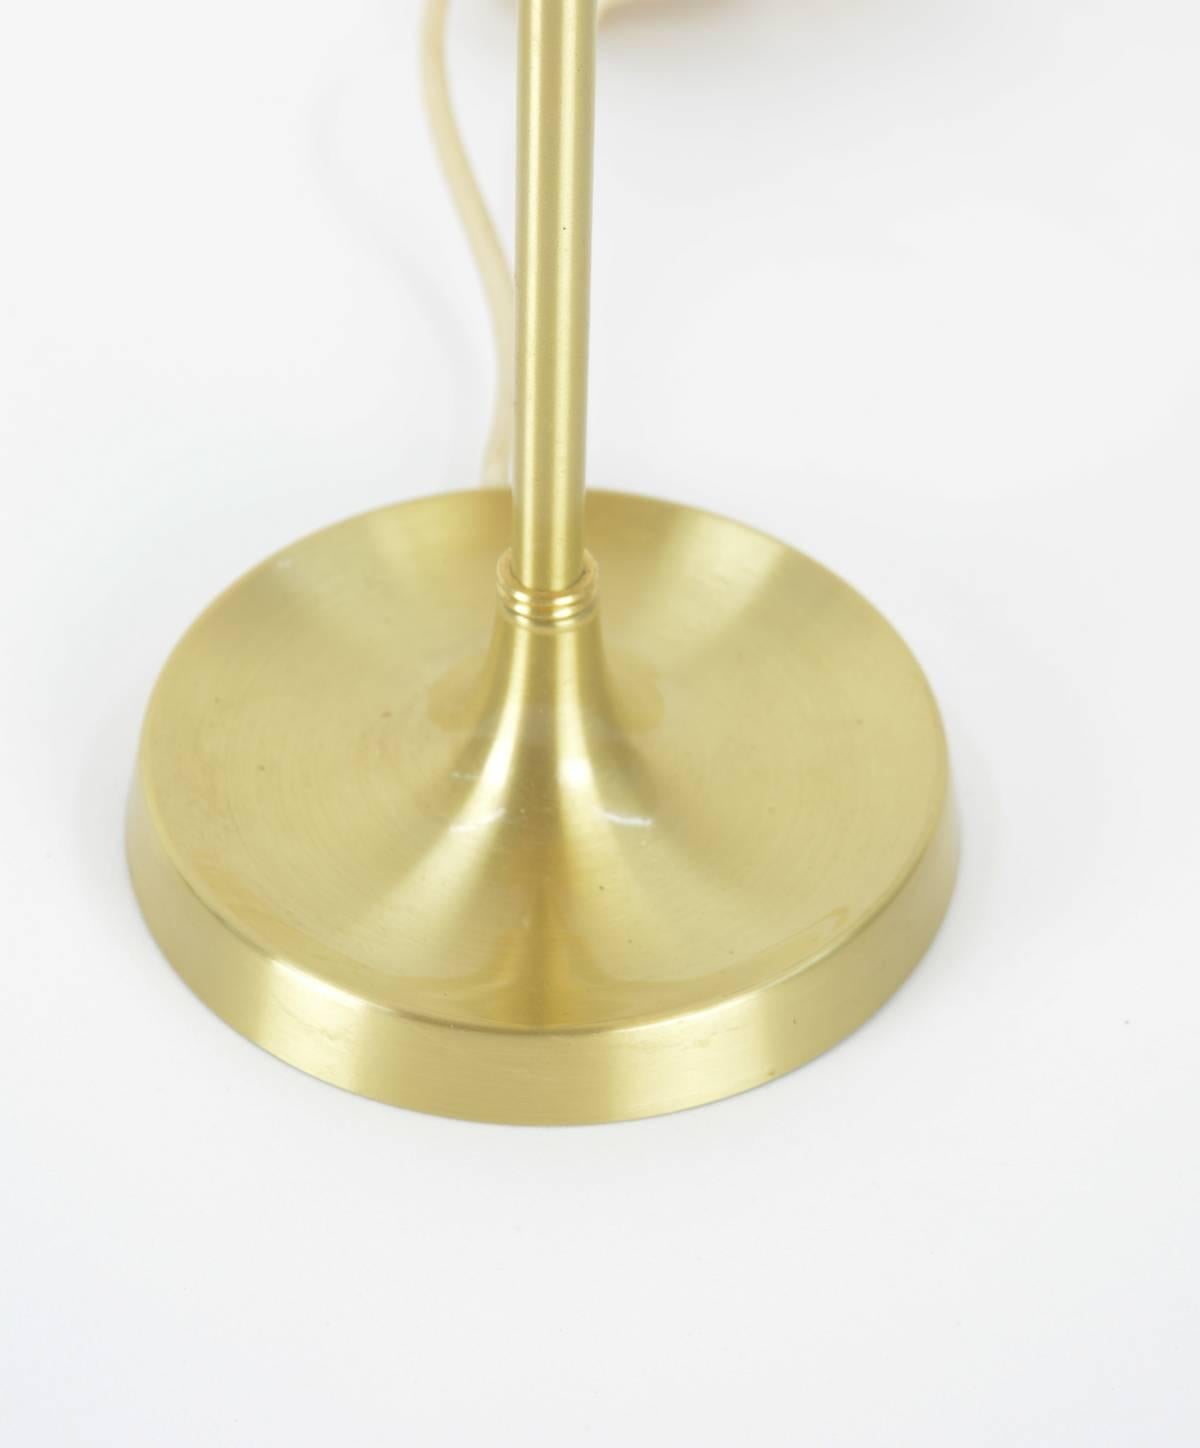 Danish Pair of Le Klint, Model 307 Brass Table Lamps Designed by Esben Klint, 1948